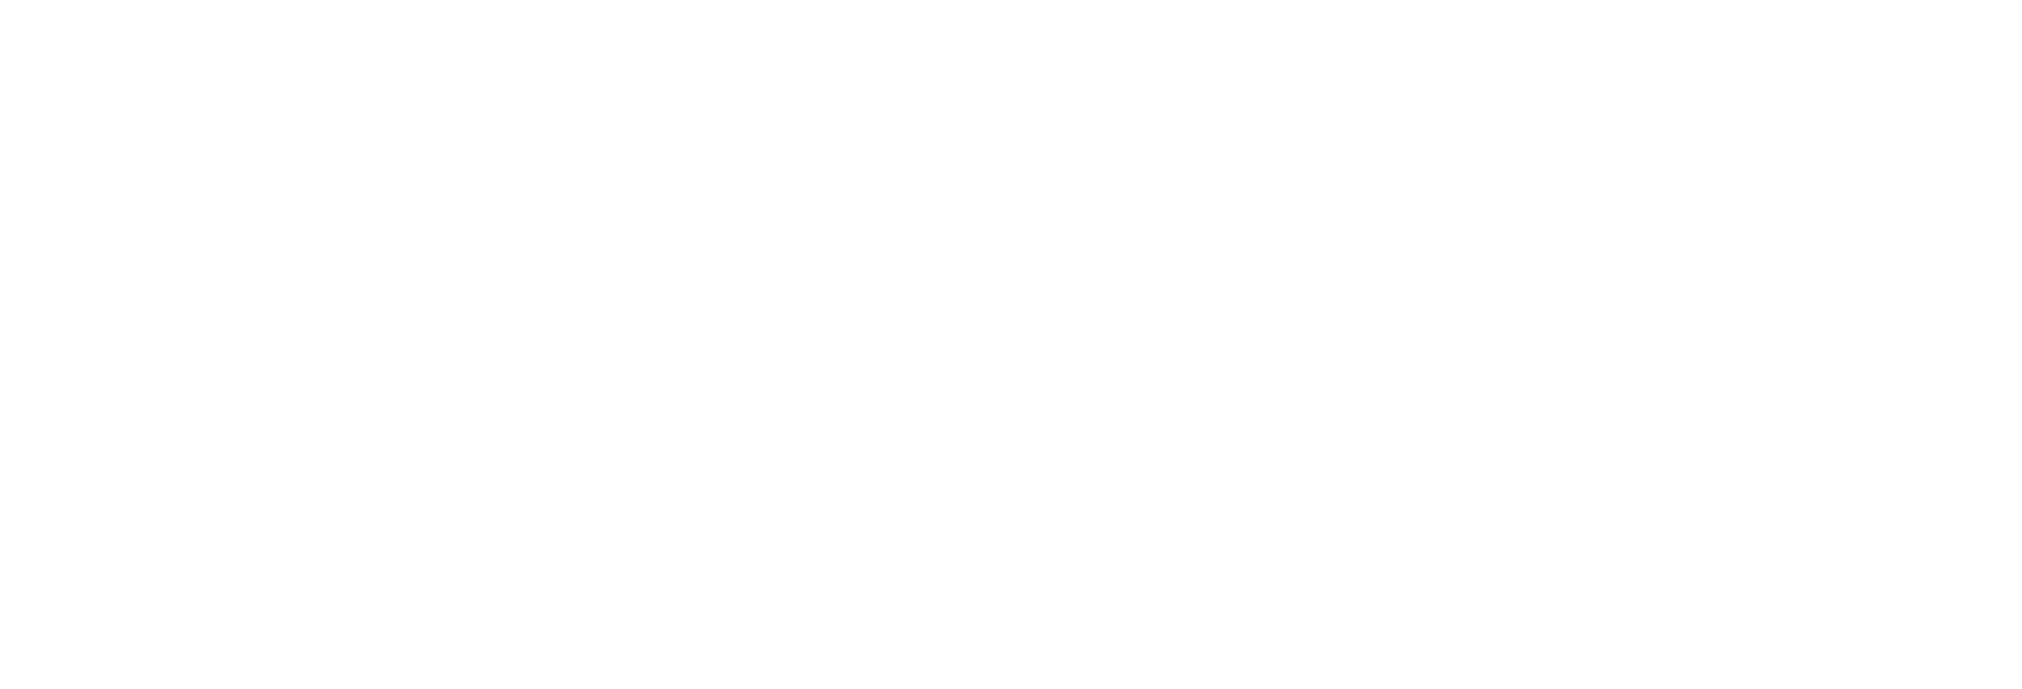 2018 Kono South Island Pinot Noir Logo